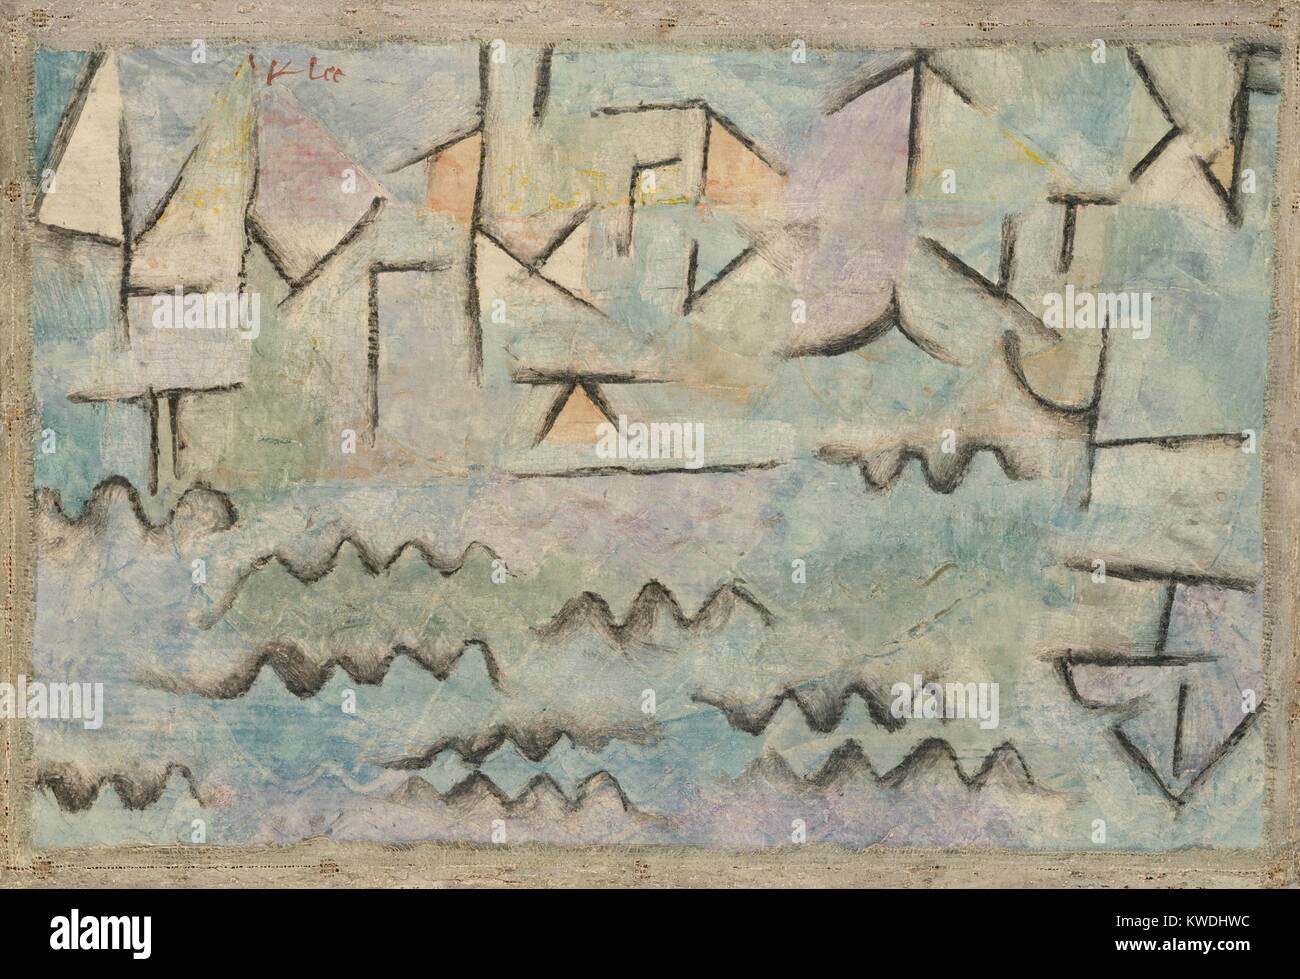 El Rin en Duisburgo, por Paul Klee, 1937, Swiss pintura, aceite y carboncillo sobre cartulina. Resumen Paisaje con río, pintados con símbolos infantiles para ondas en el agua y la lineal Geometría de edificios (BSLOC 2017 7 51) Foto de stock